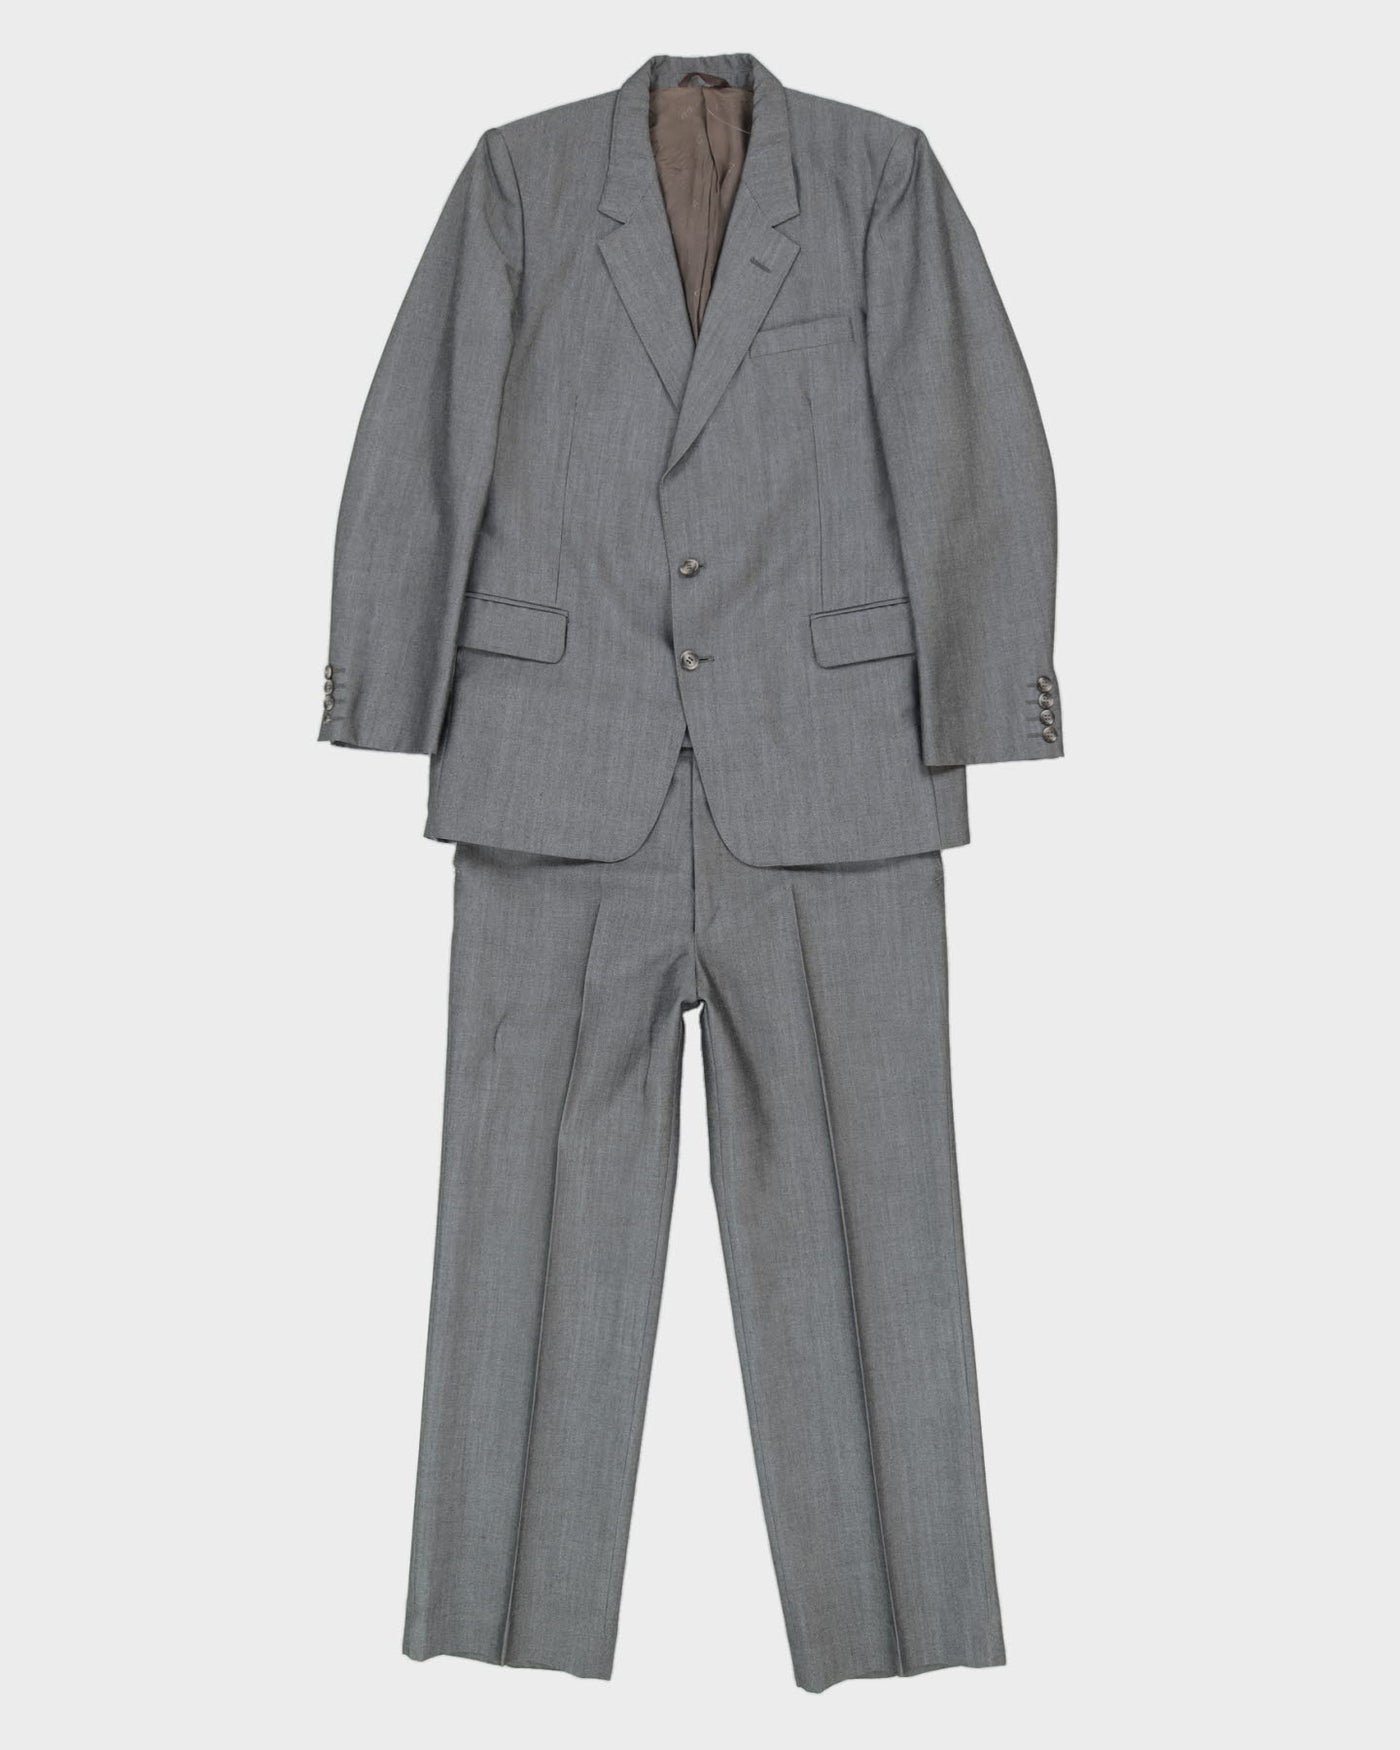 Christian Dior Monsieur Grey 2 Piece Suit - S